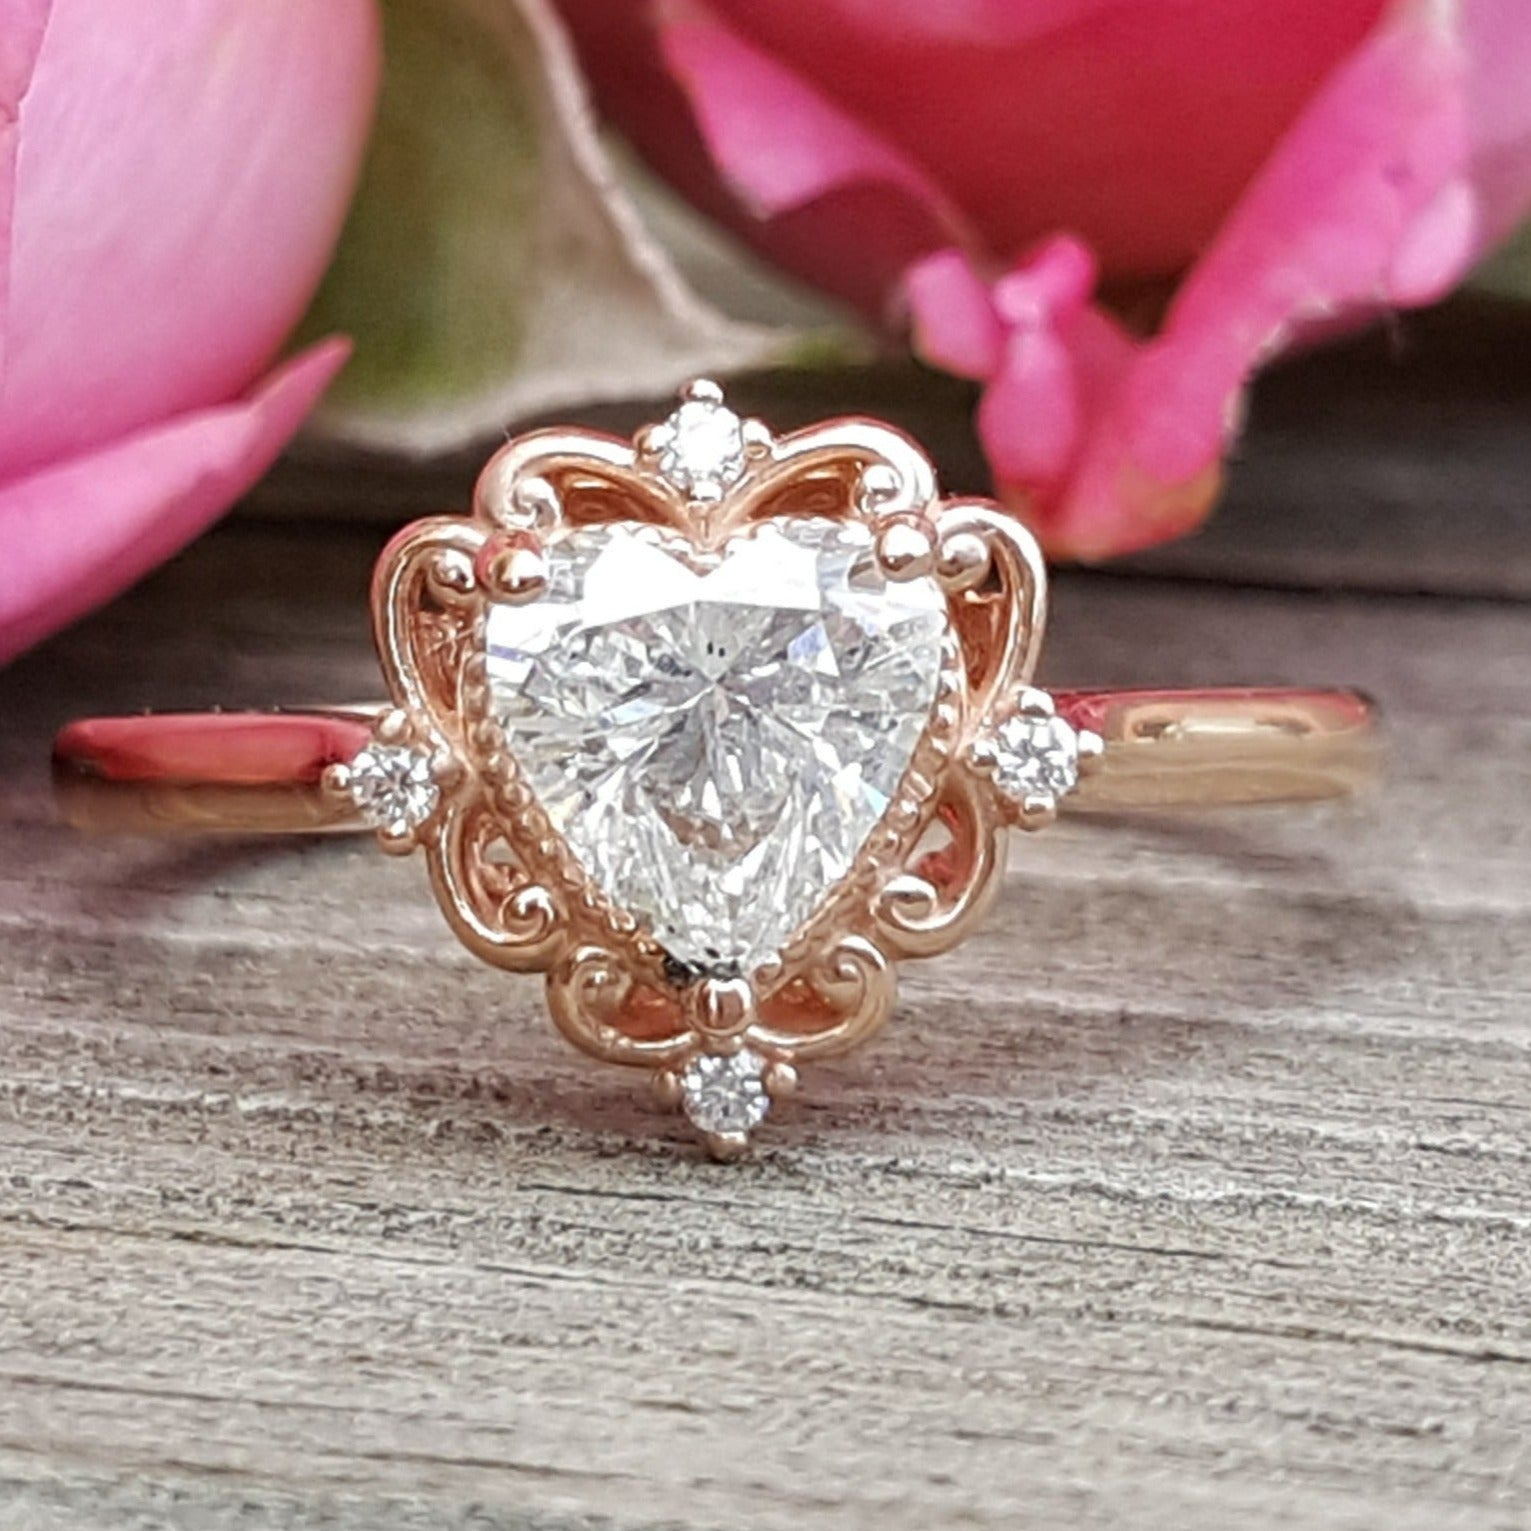 Pleasing Heart-Shaped Diamond Frame Engagement Ring in 14k White Gold,